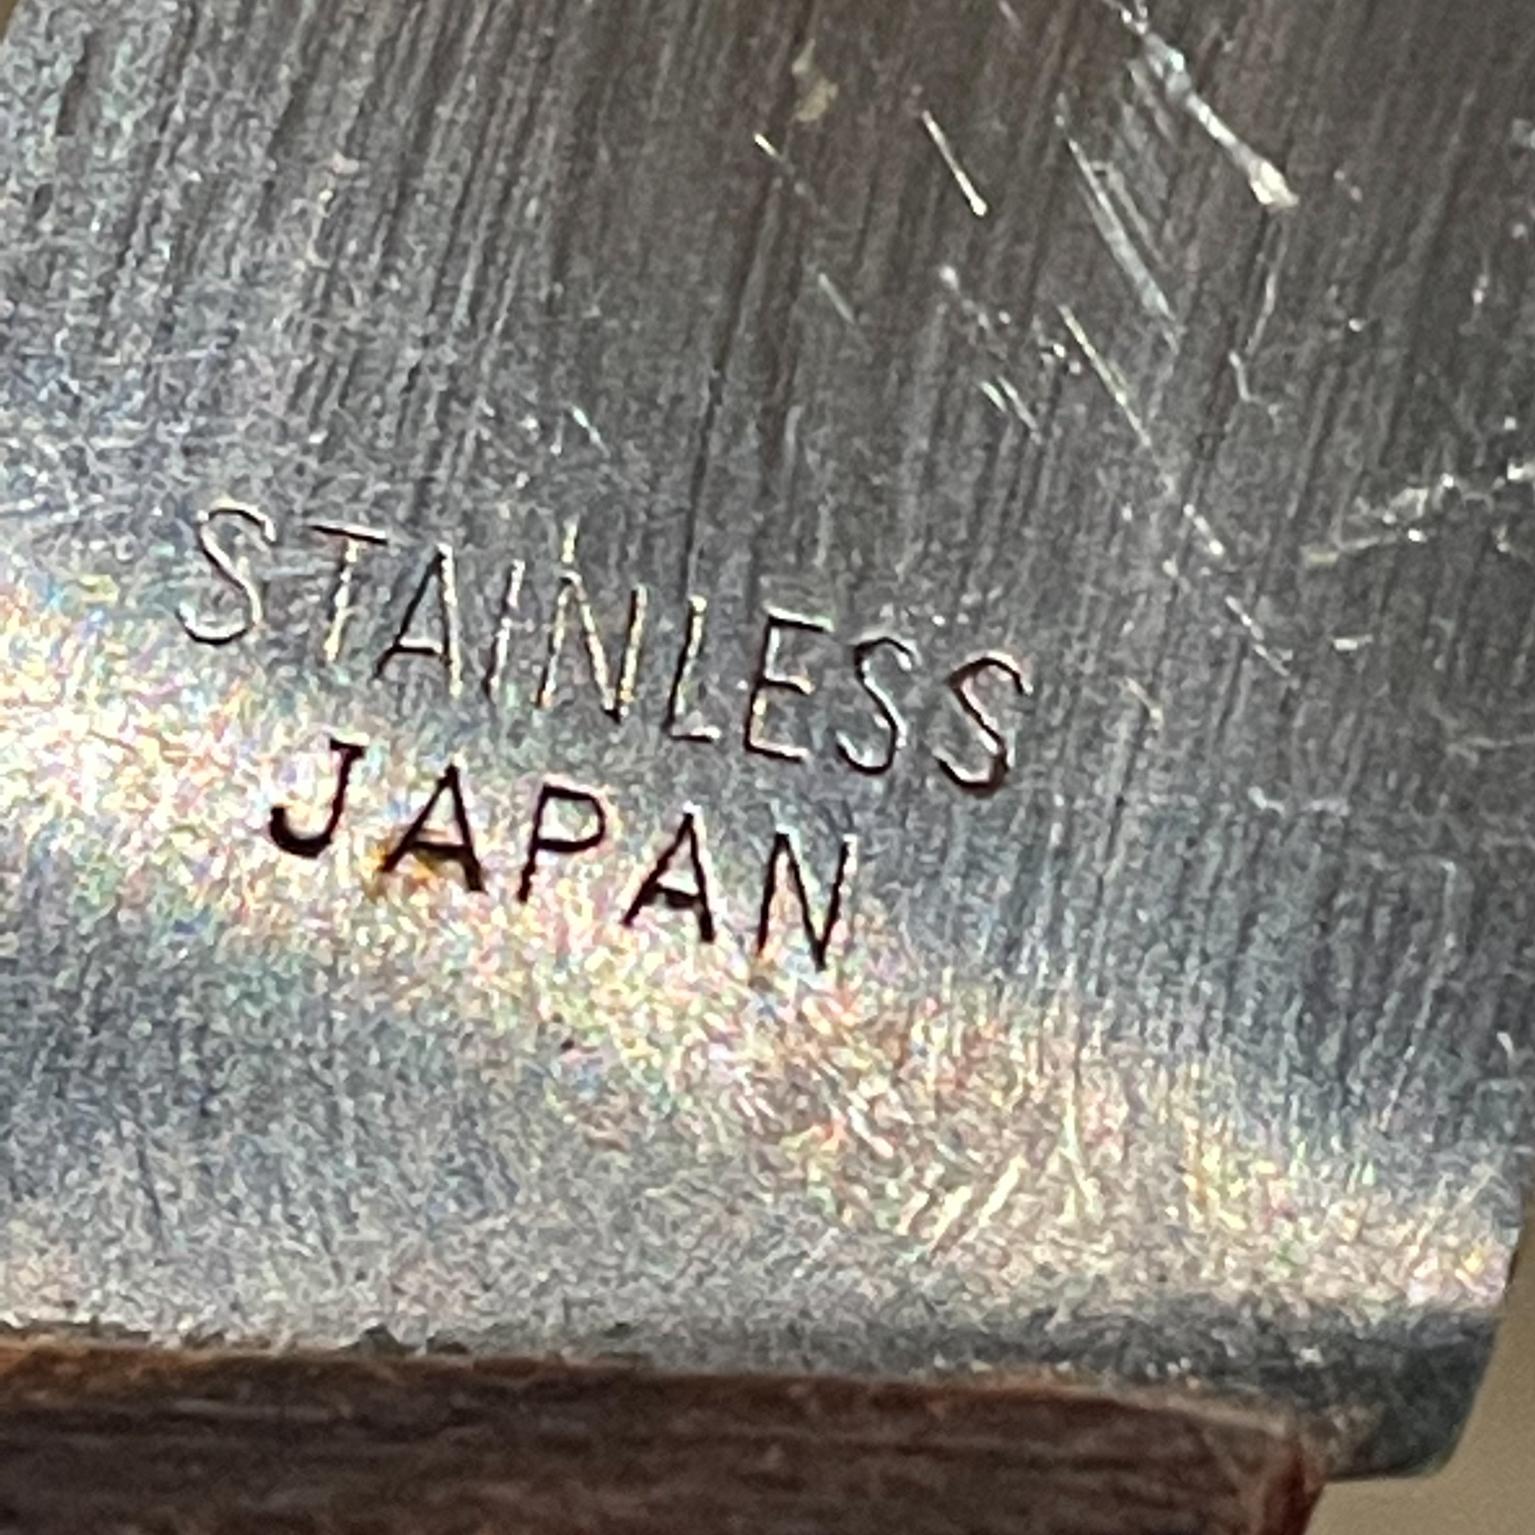 Japanese Japan Moravan Knives Steak Cutlery Set of 5 Midcentury Modern 1960s